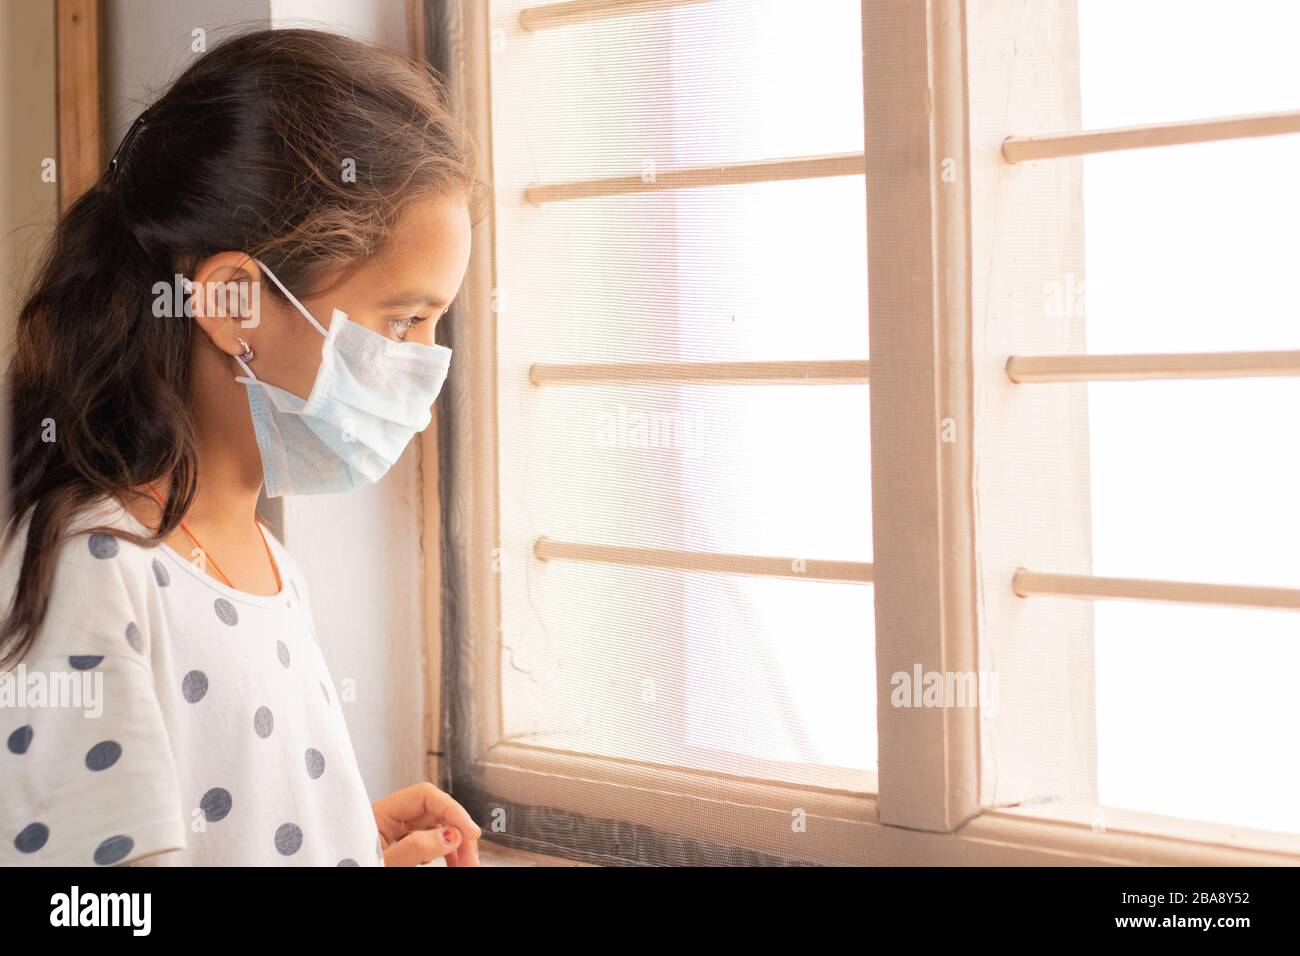 Trauriges junges Mädchen, das während der häuslichen Isolation durch das Fenster schaut und dabei beobachtet - Coronavirus oder Covid-19 Quarantänekonzept. Stockfoto